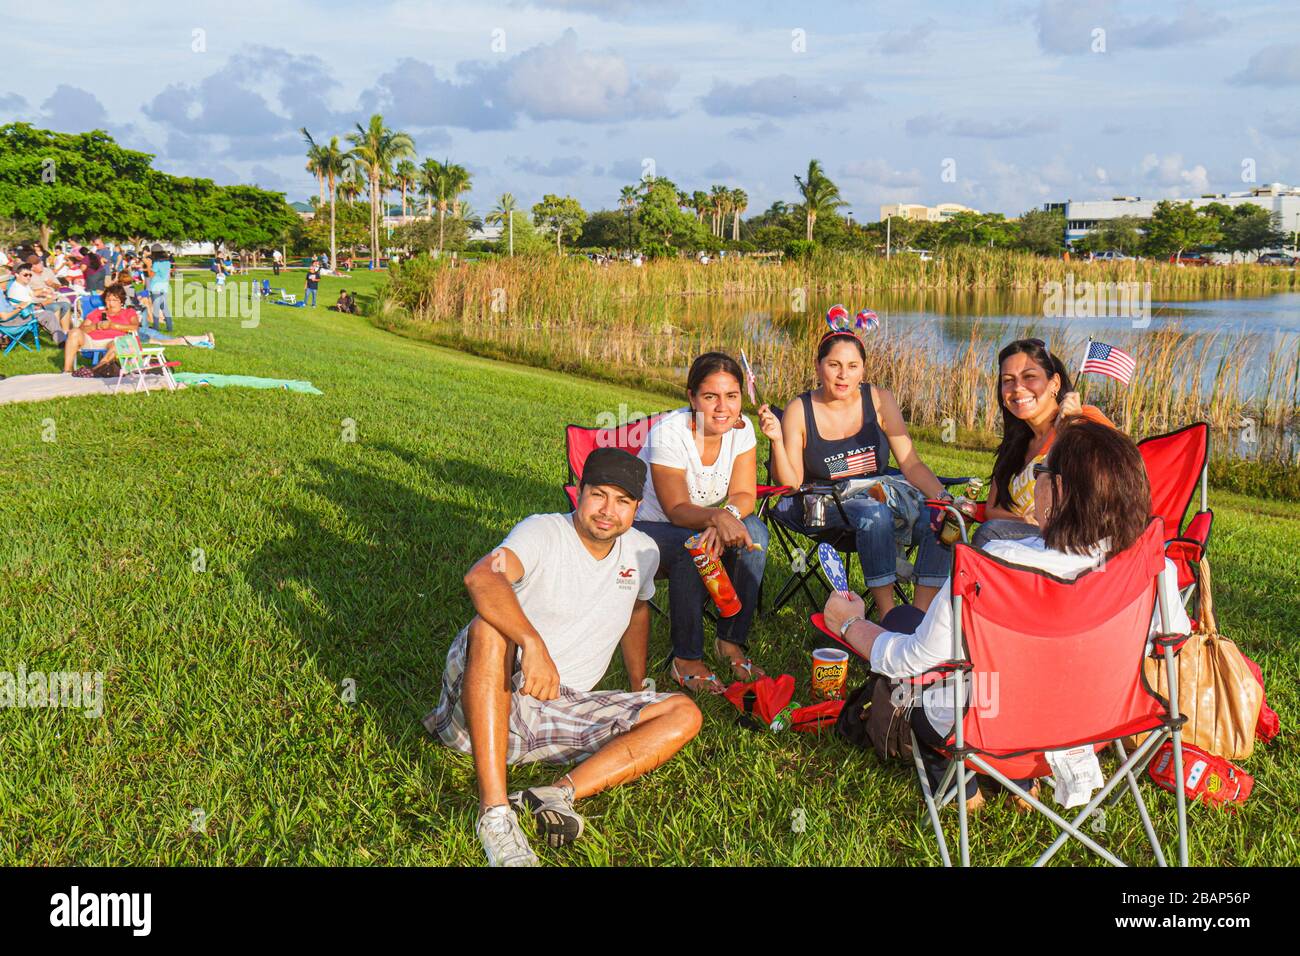 Miami Florida, Doral, J. C. Bermudez Park, 4. Juli, hispanische Familien, Eltern, Eltern, Kinder, Mann, Männer, Erwachsene, Frau, fema Stockfoto